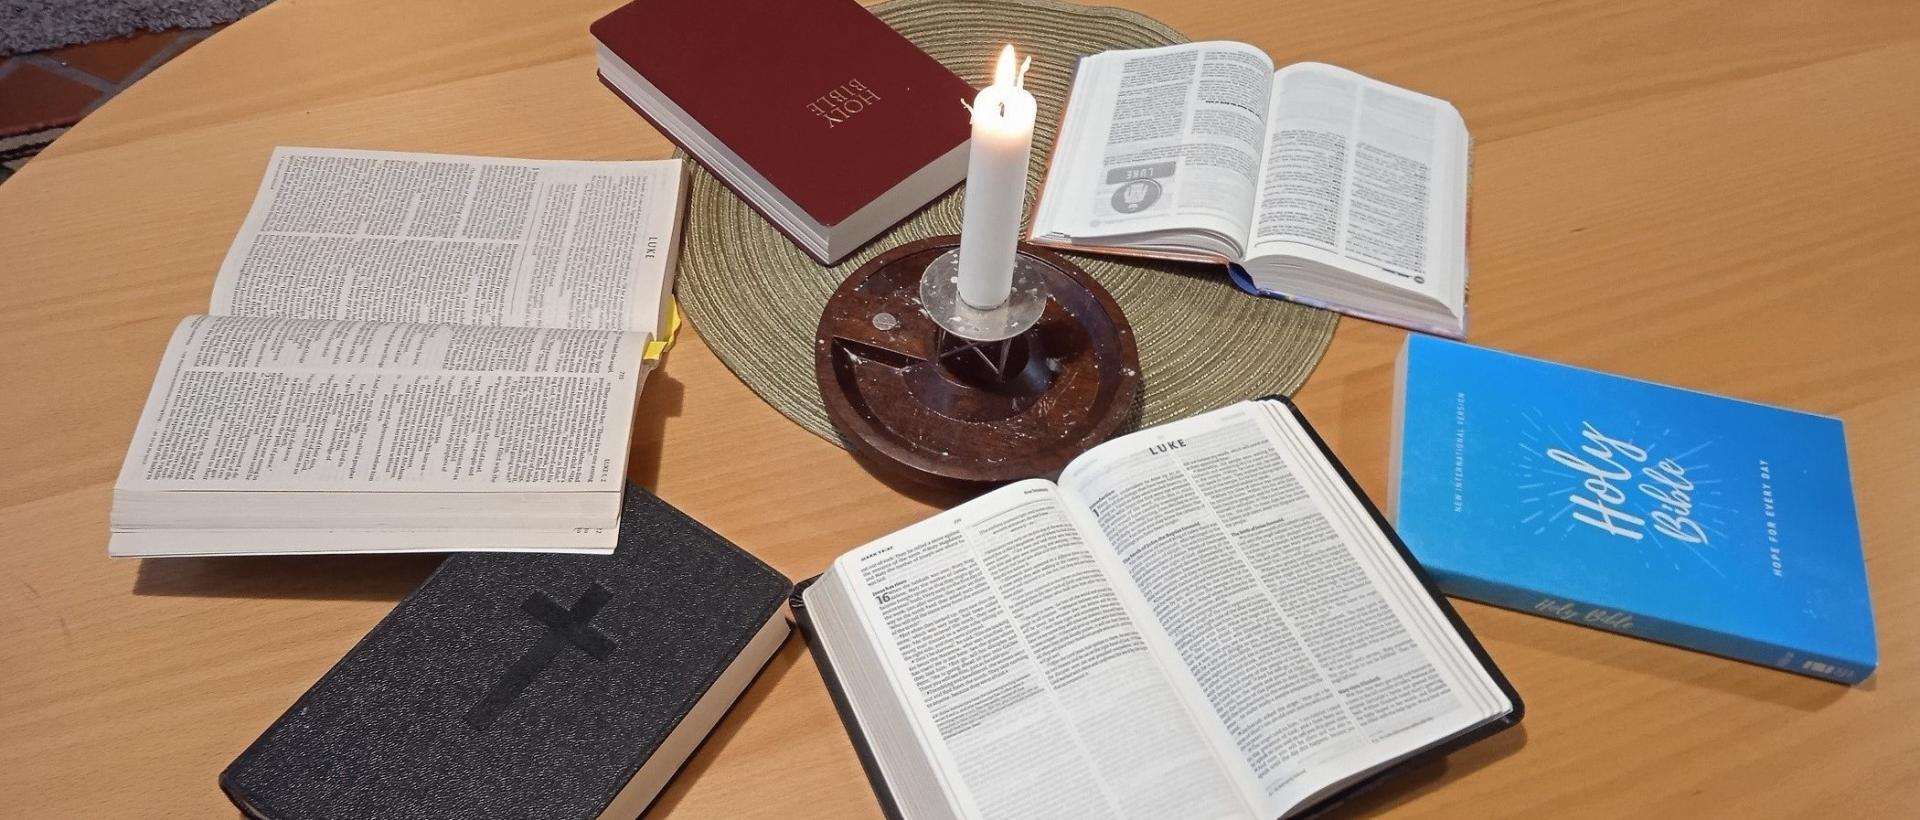 Bible Study, Six Bibles in English language and a candle - Raamattupiiri, kuusi englanninkielistä Raamattua ja kynttilä